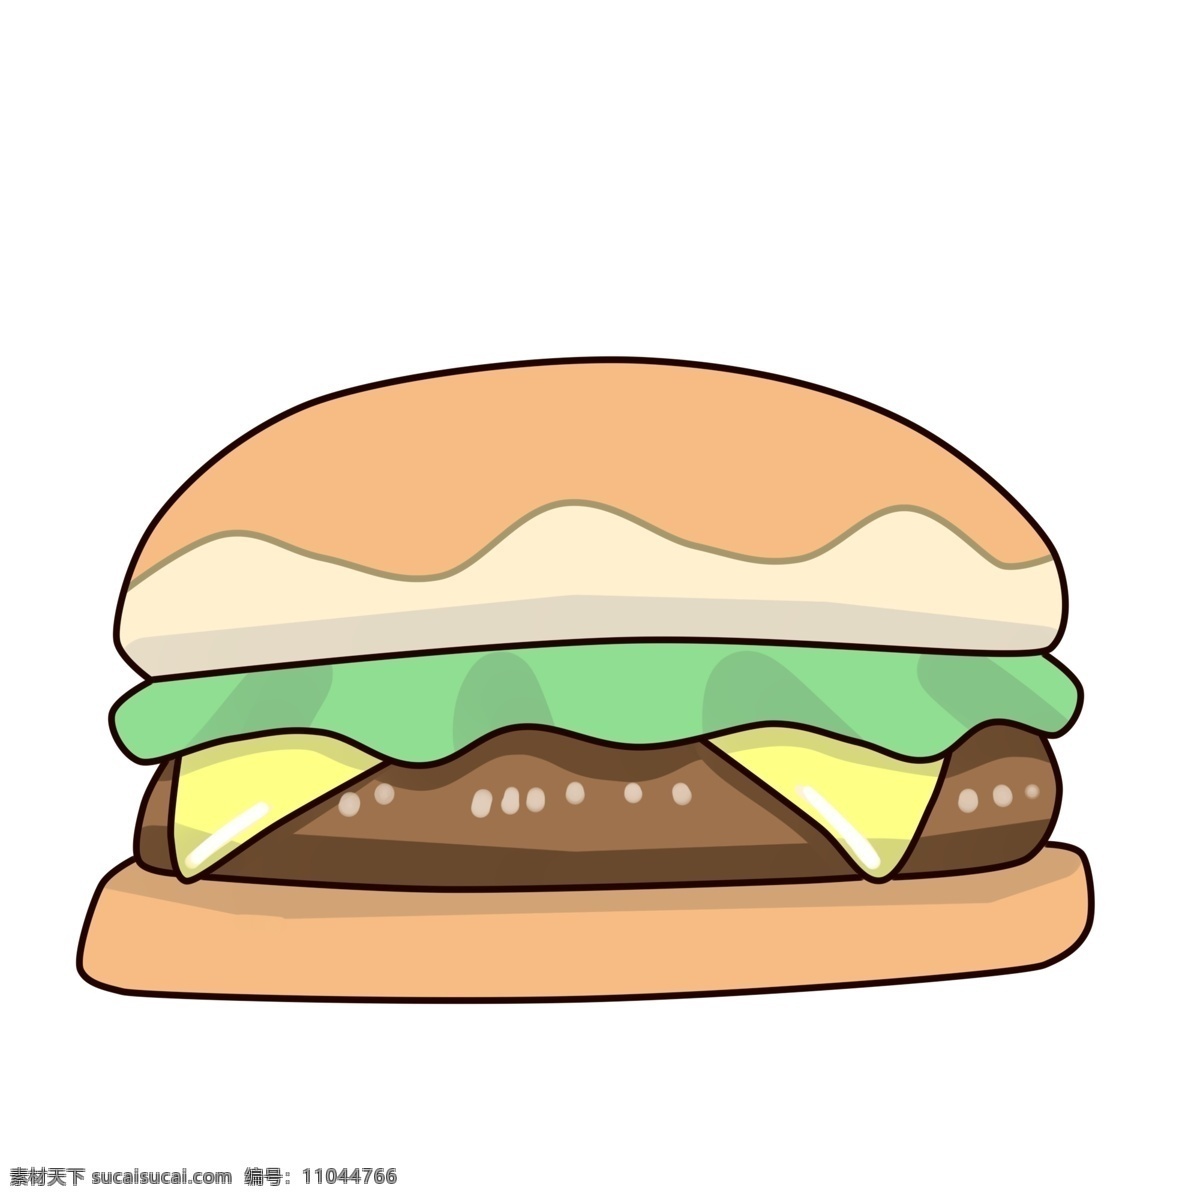 黄色 面包 夹心 汉堡 插图 绿色蔬菜 有机蔬菜 夹心汉堡 面包汉堡 好吃的汉堡 快餐汉堡 德克士汉堡 汉堡插图